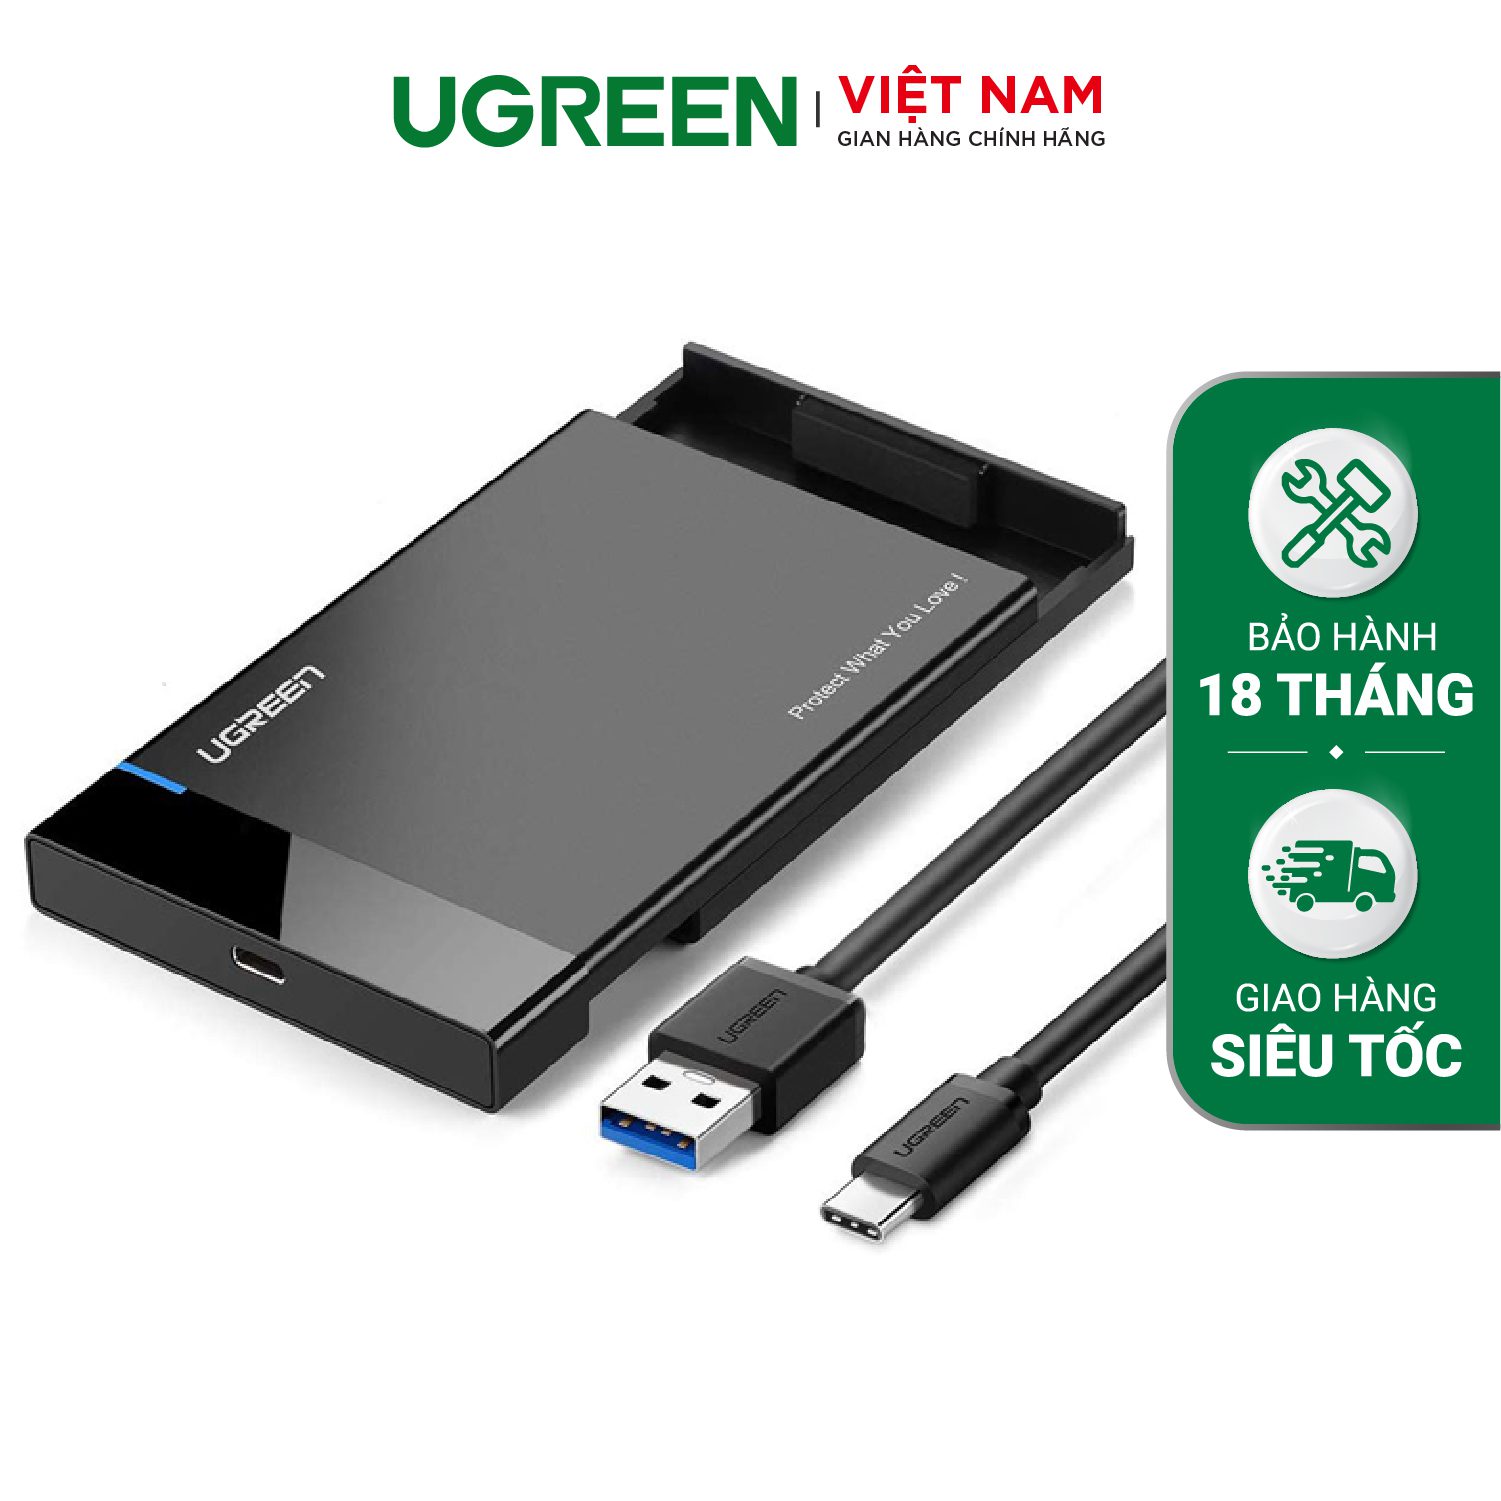 Hộp đựng ổ cứng UGREEN US221 Đựng ổ 2.5 inch SSD/HDD hỗ trợ lên đến 6TB vỏ nhựa ABS cao cấp (dây USB 3.0 gắn liền vỏ hộp) kích thước 128x82x14mm – Ugreen Việt Nam